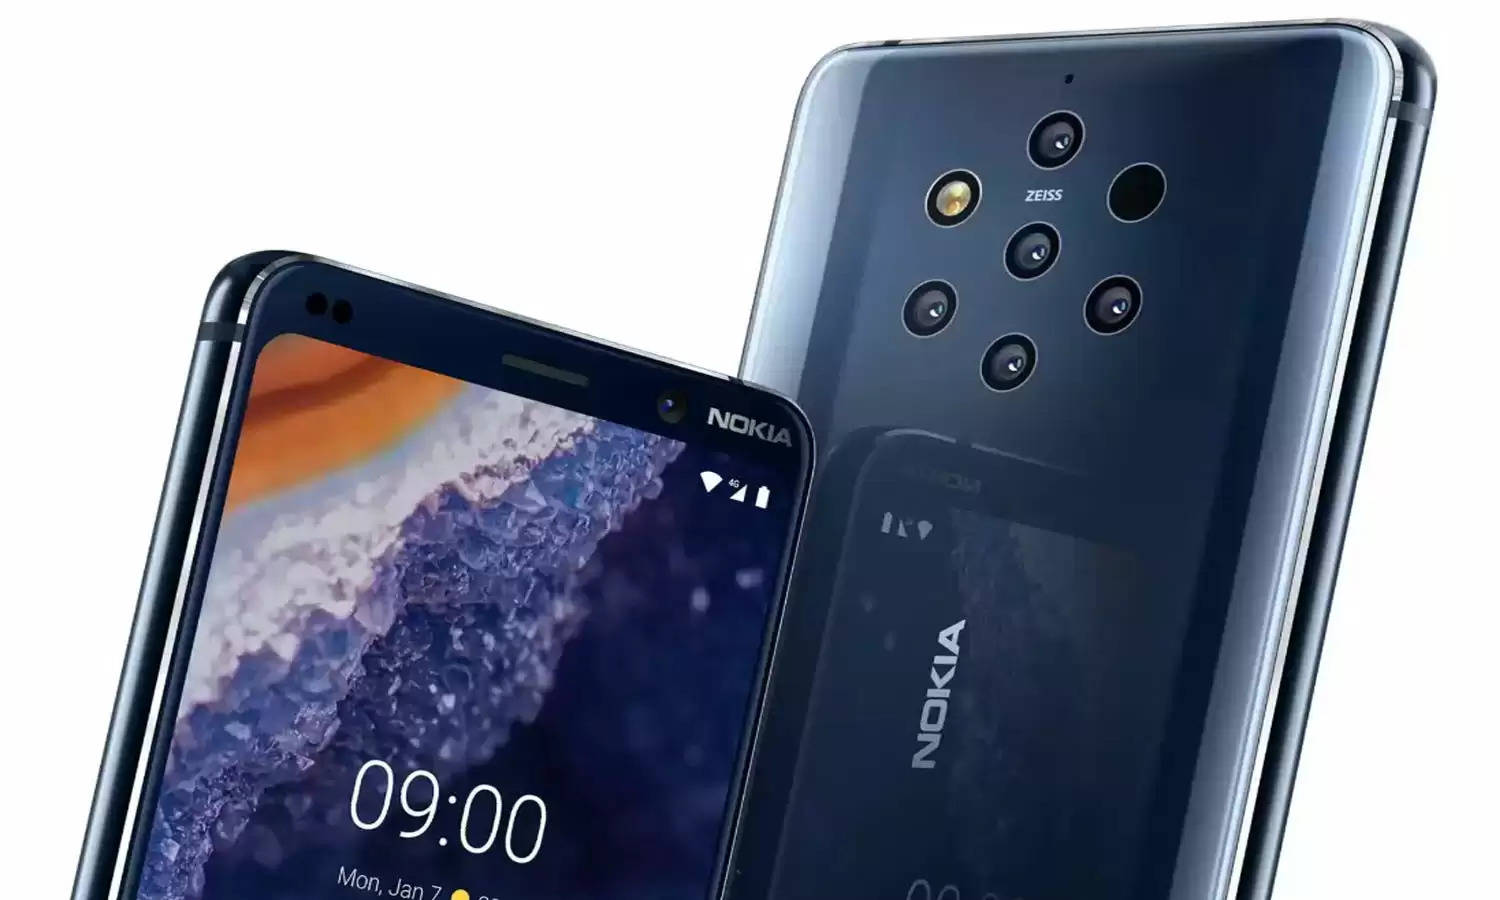 Nokia के धाकड़ 5G फोन के लिए हो जाए तैयार! मिलगें ये डिज़ाइन और झक्कास फीचर्स